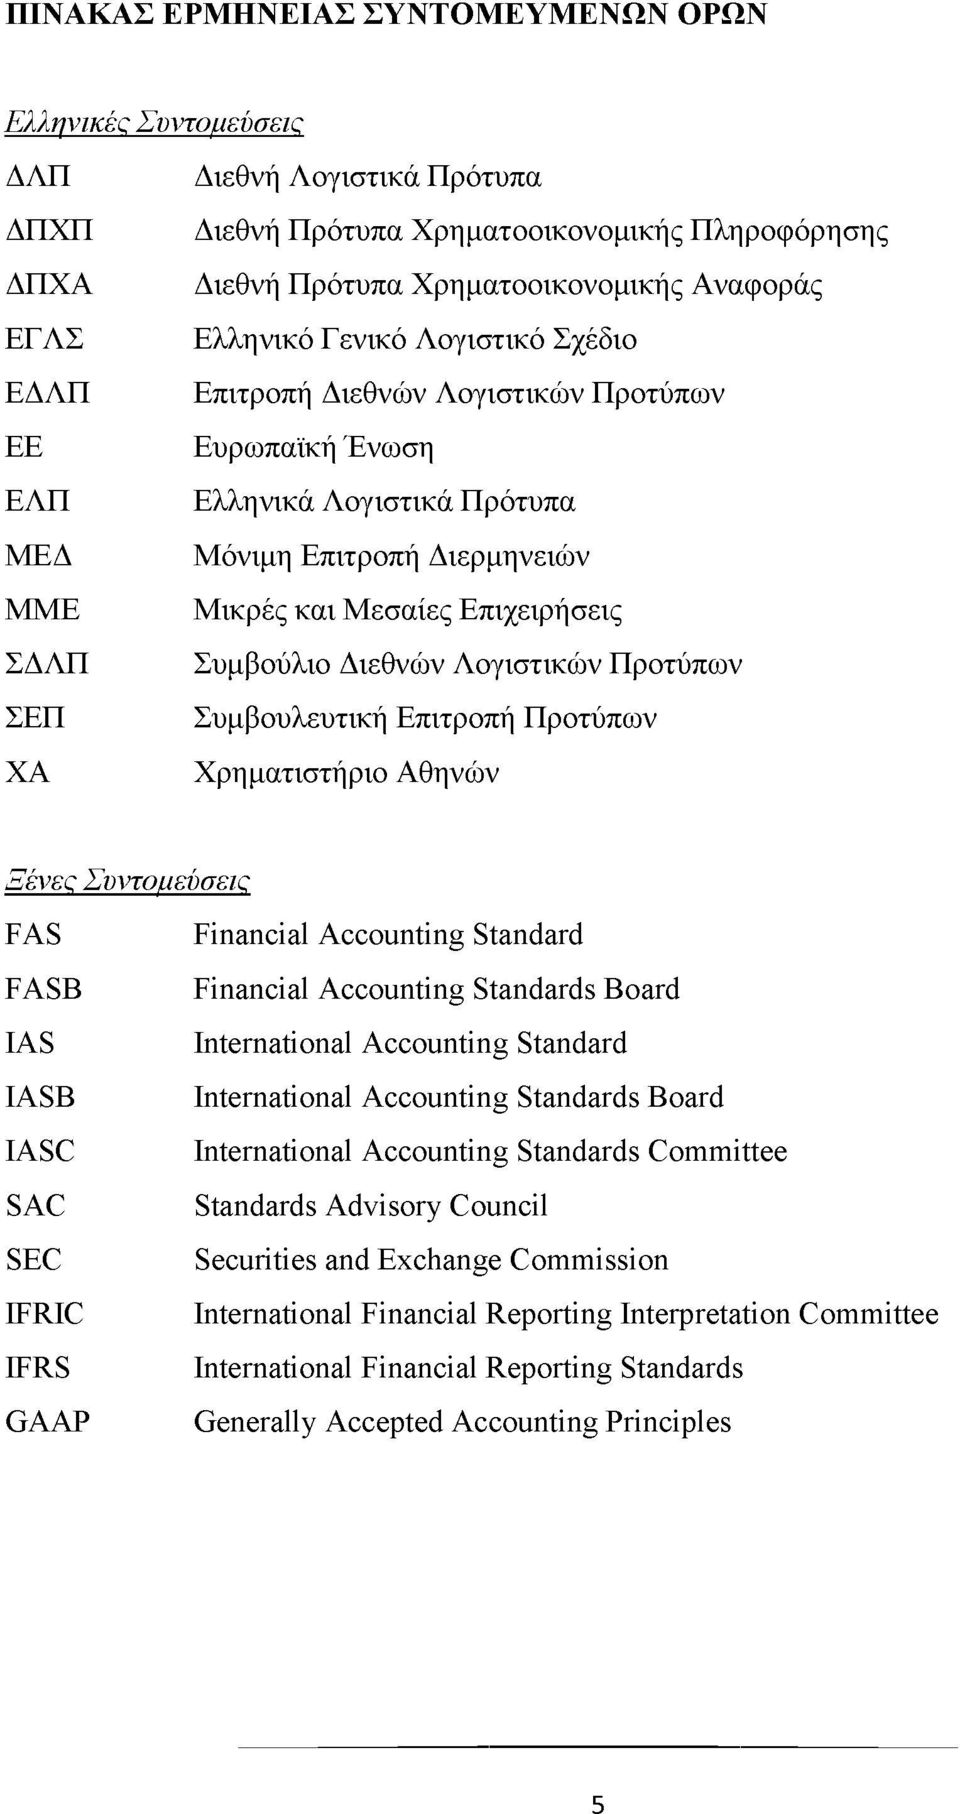 Συμβούλιο Διεθνών Λογιστικών Προτύπων ΣΕΠ Συμβουλευτική Επιτροπή Προτύπων ΧΑ Χρηματιστήριο Αθηνών Ξένες Συντομεύσεις FAS Financial Accounting Standard FASB Financial Accounting Standards Board IAS